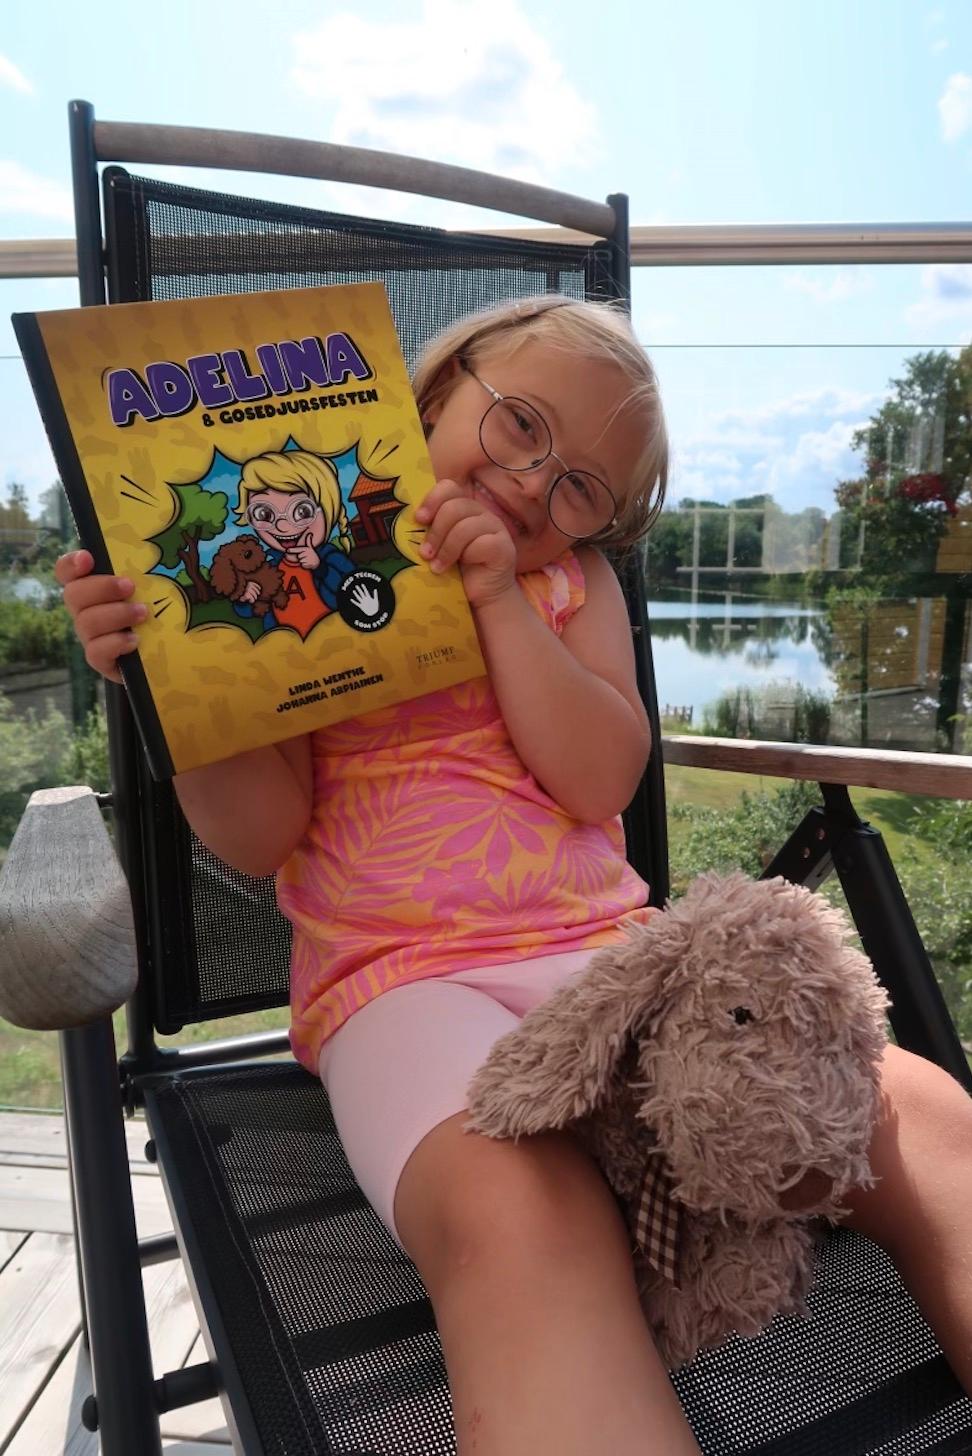 Adelina med sin bok: ”Adelina och gosedjursfesten – Med tecken som stöd!”